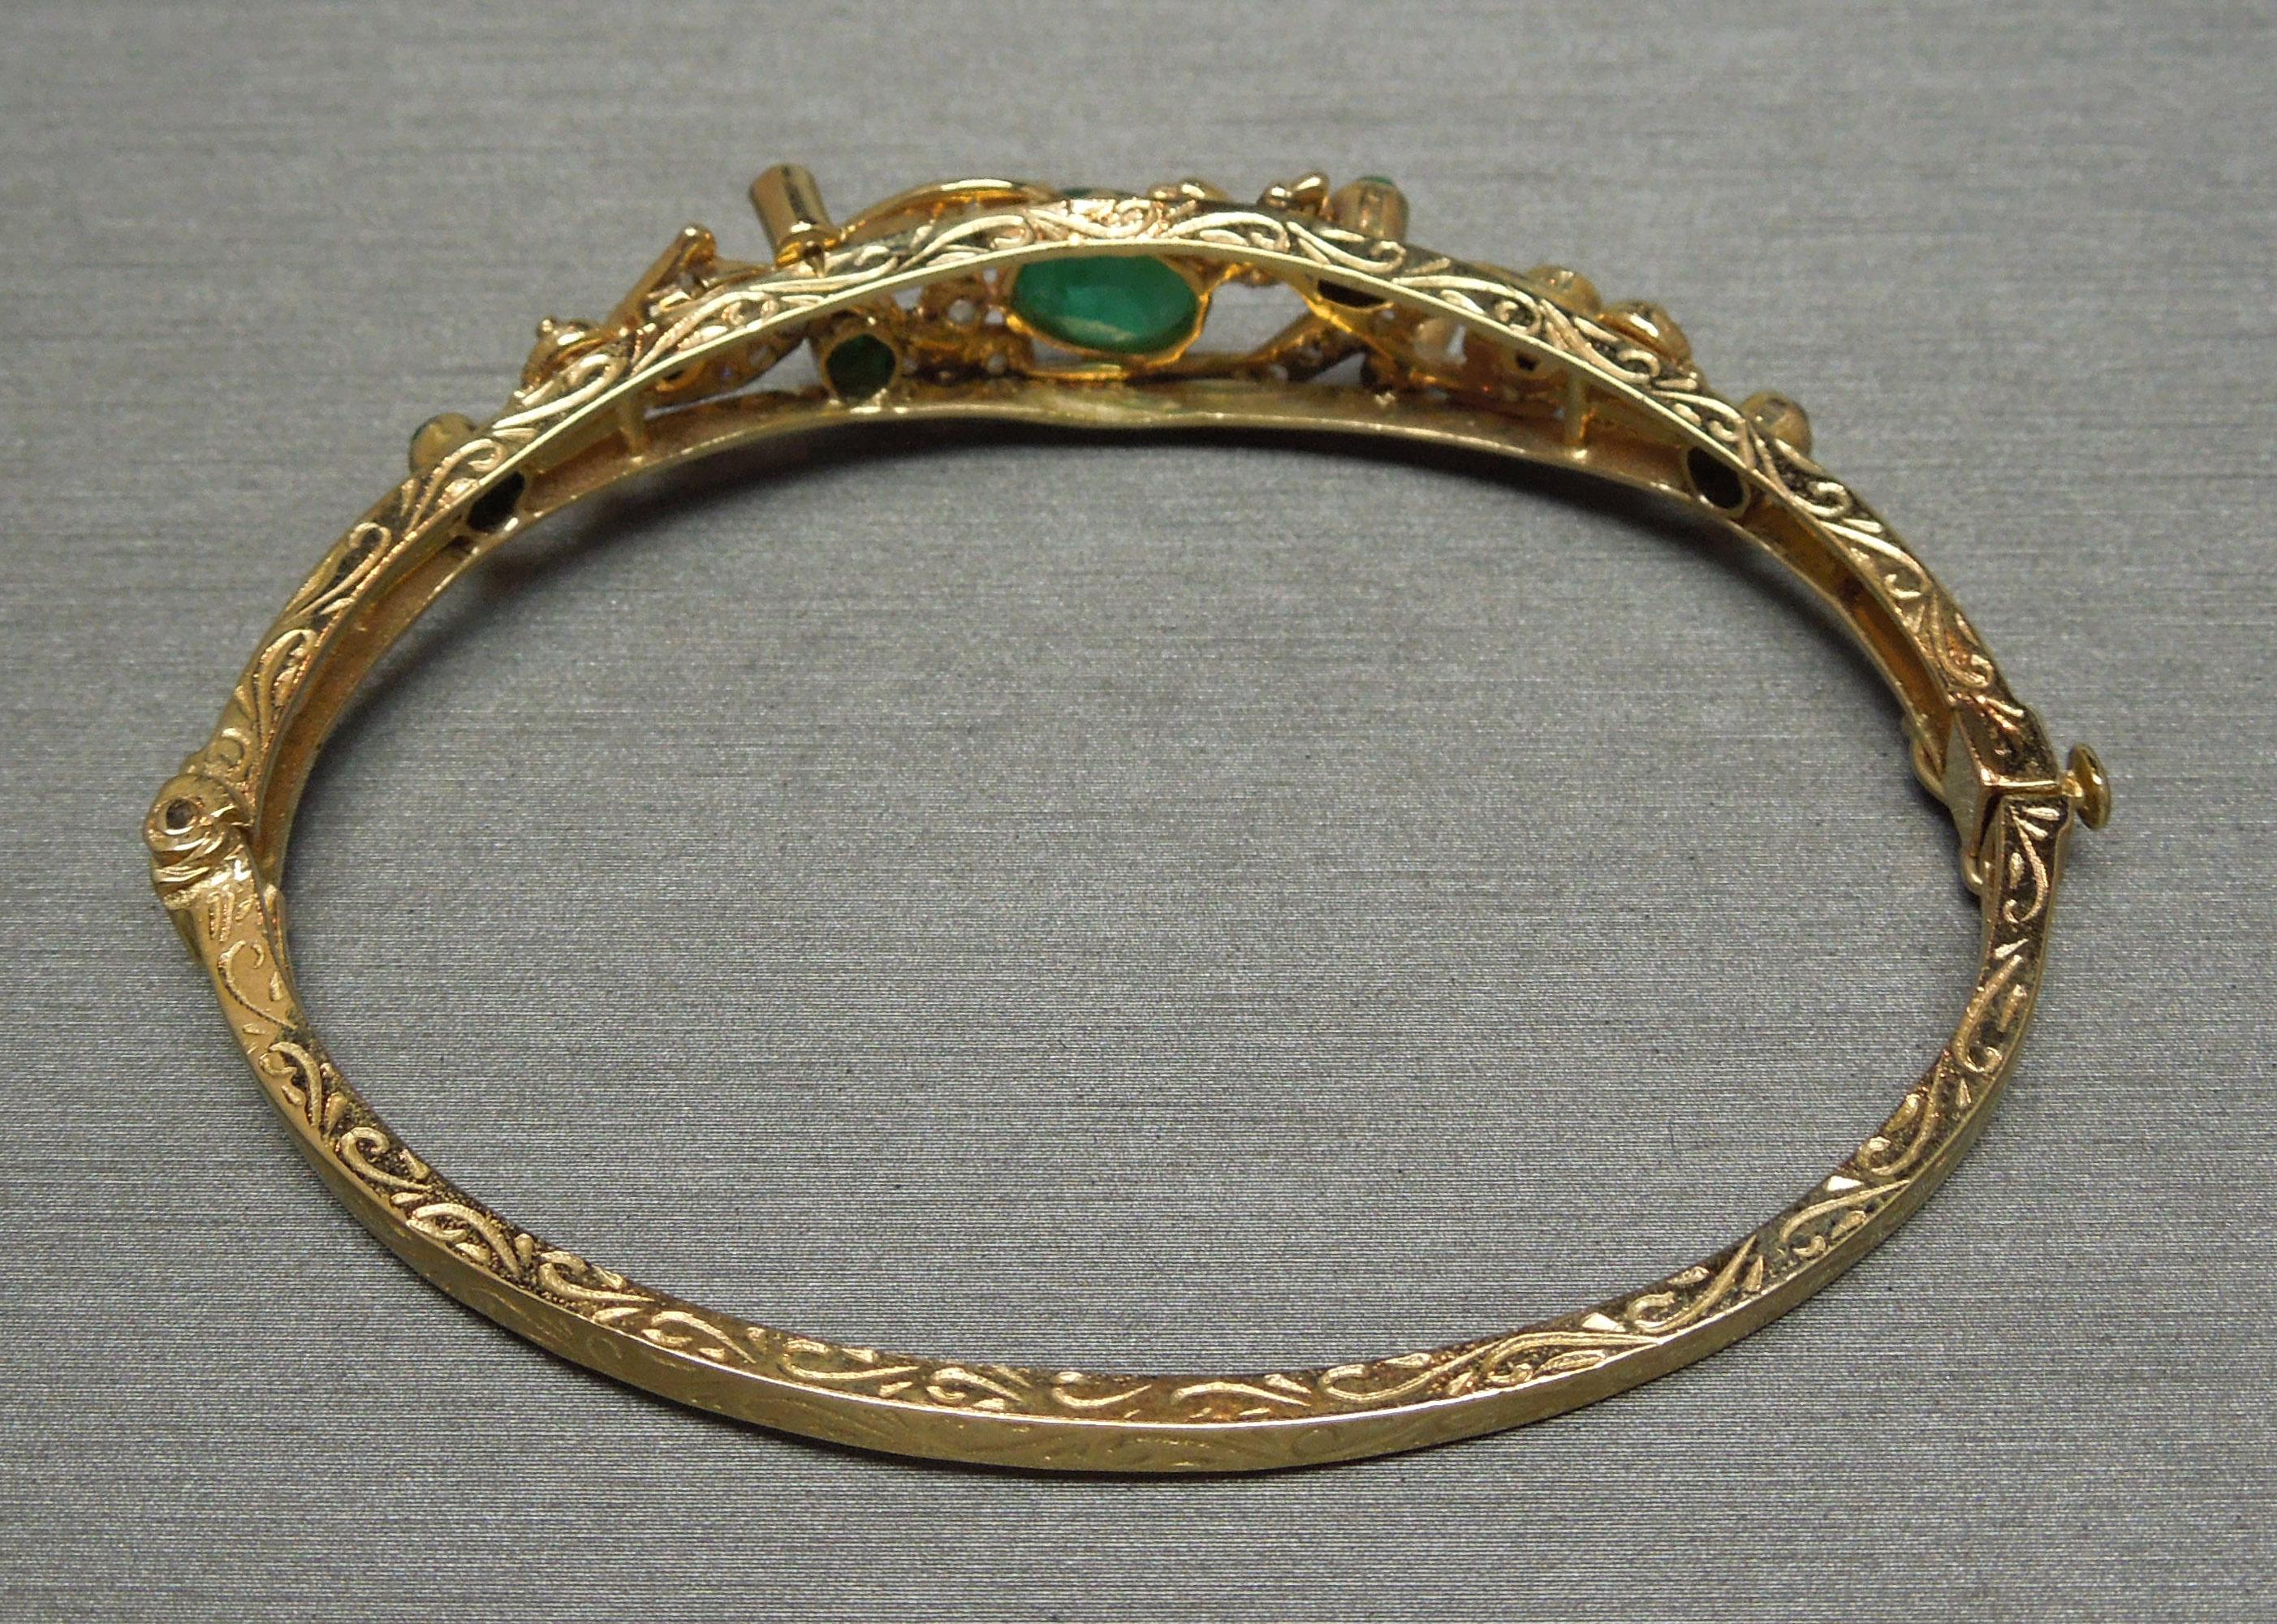 Dieses filigrane Armband aus 14 Karat Gelbgold mit Smaragden und Diamanten verbindet edwardianische Inspirationen mit einem leichten Hauch von Art déco. Die ovale Form des Armreifs bietet mehr Komfort und sorgt dafür, dass der Schmuck in der Mitte